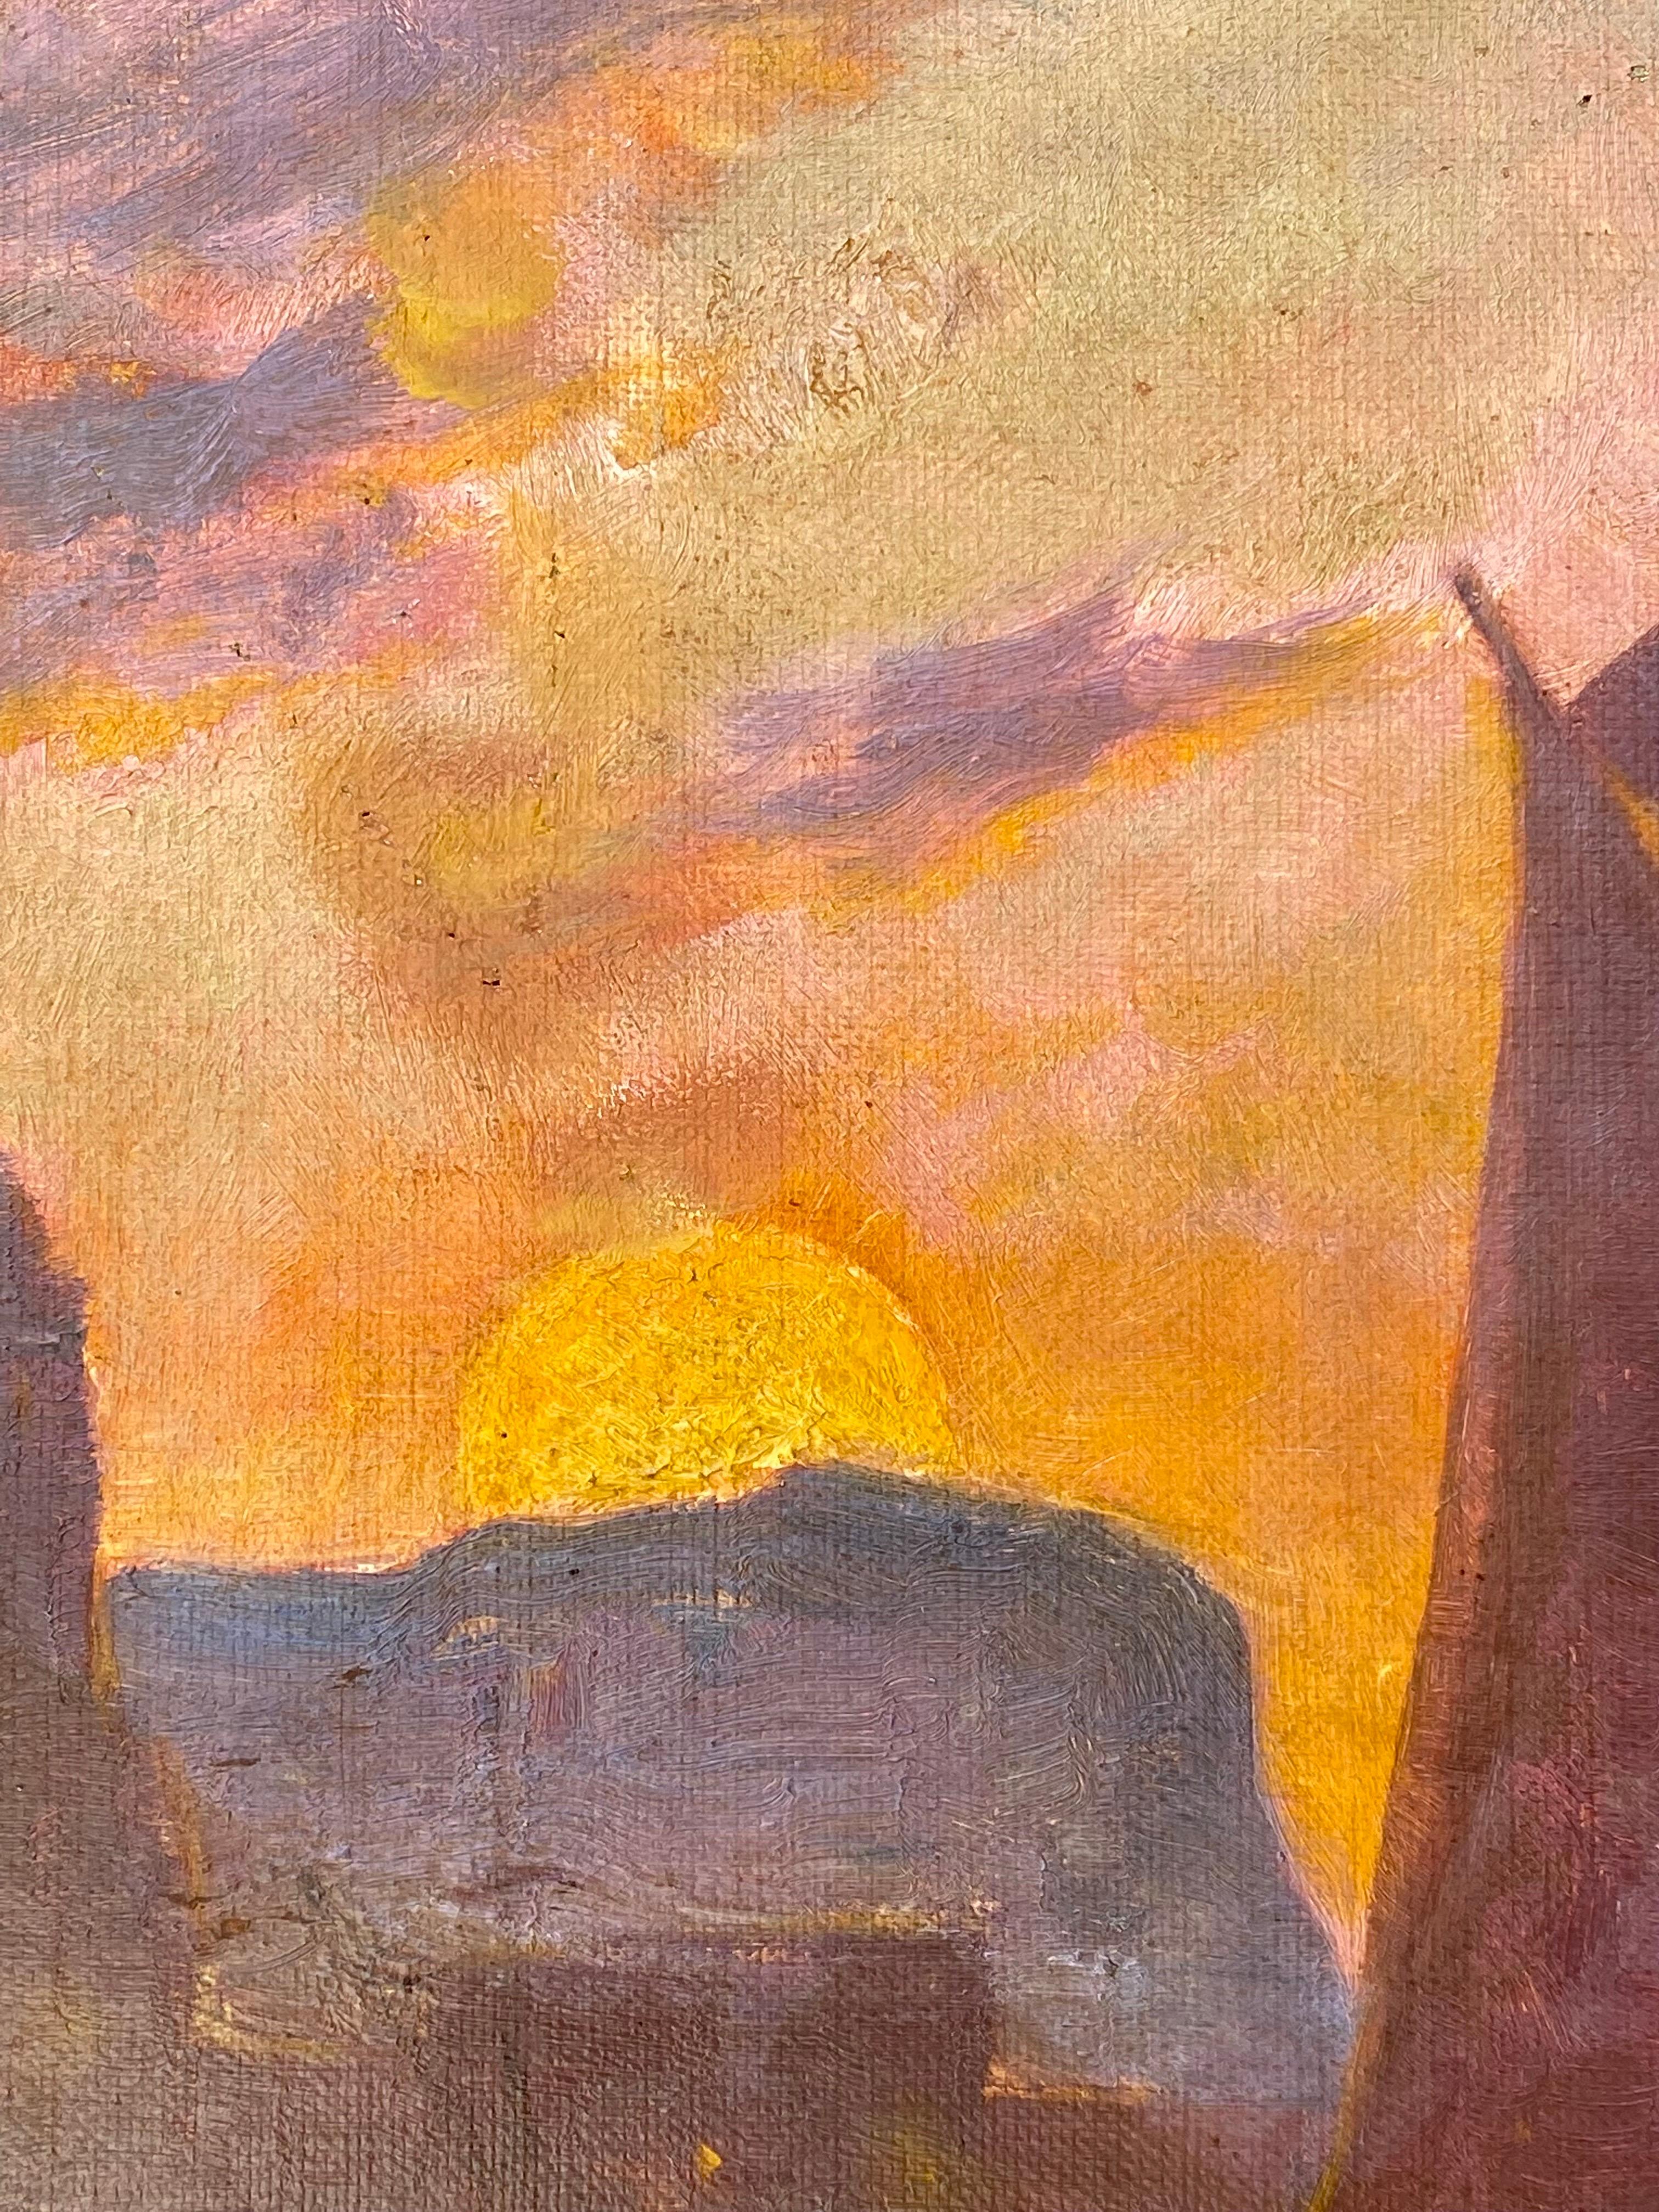 Grande peinture impressionniste française vibrante représentant des voiliers arrivant dans un petit port de la Méditerranée alors que le soleil se couche

Le coucher de soleil colore le magnifique ciel bleu de teintes vibrantes et chaudes de rose et